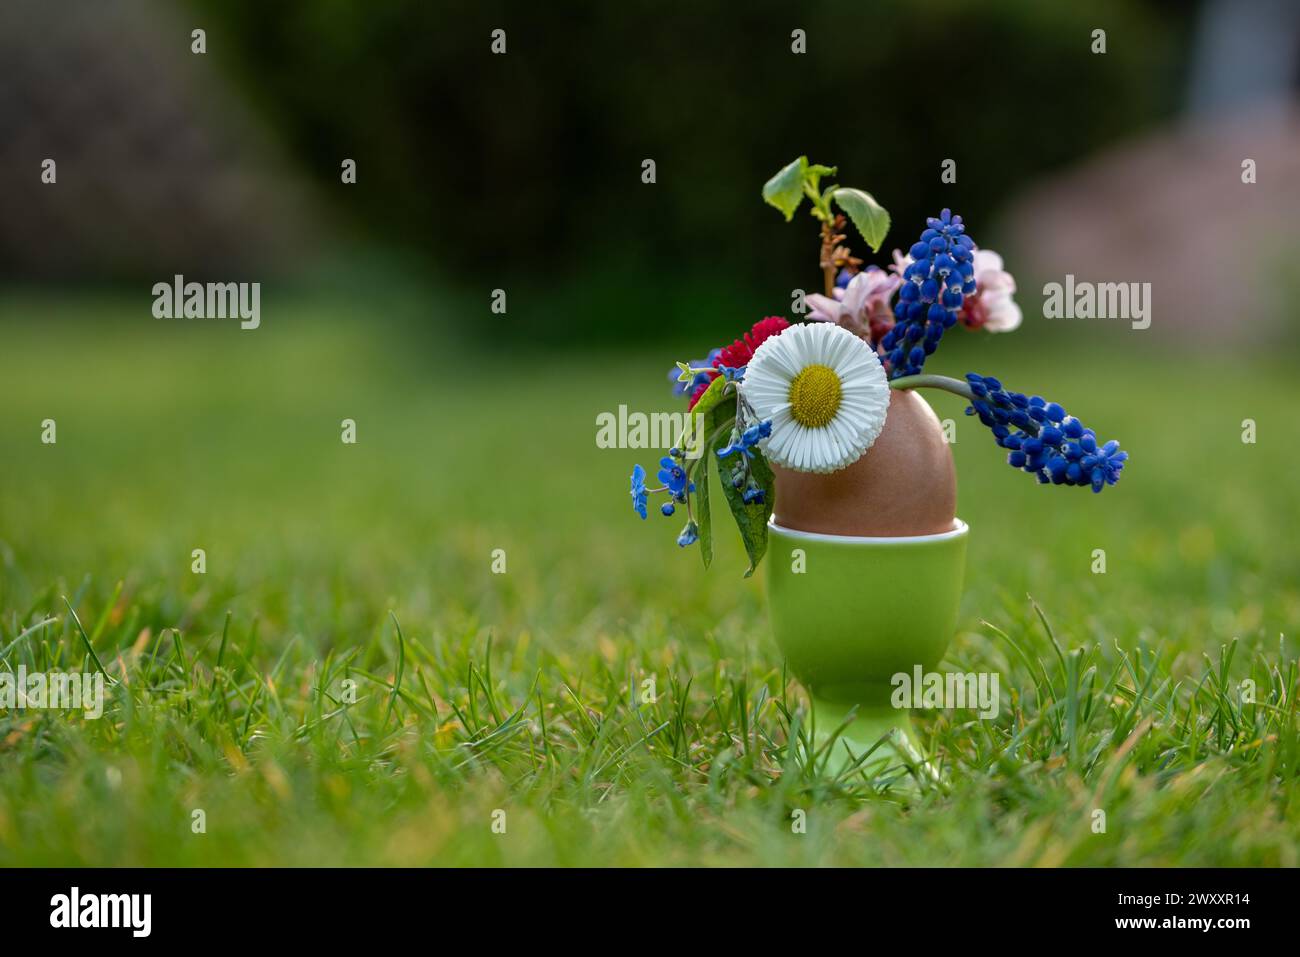 Una colorata composizione floreale in un guscio d'uovo, annidato in un prato verde, in Germania Foto Stock